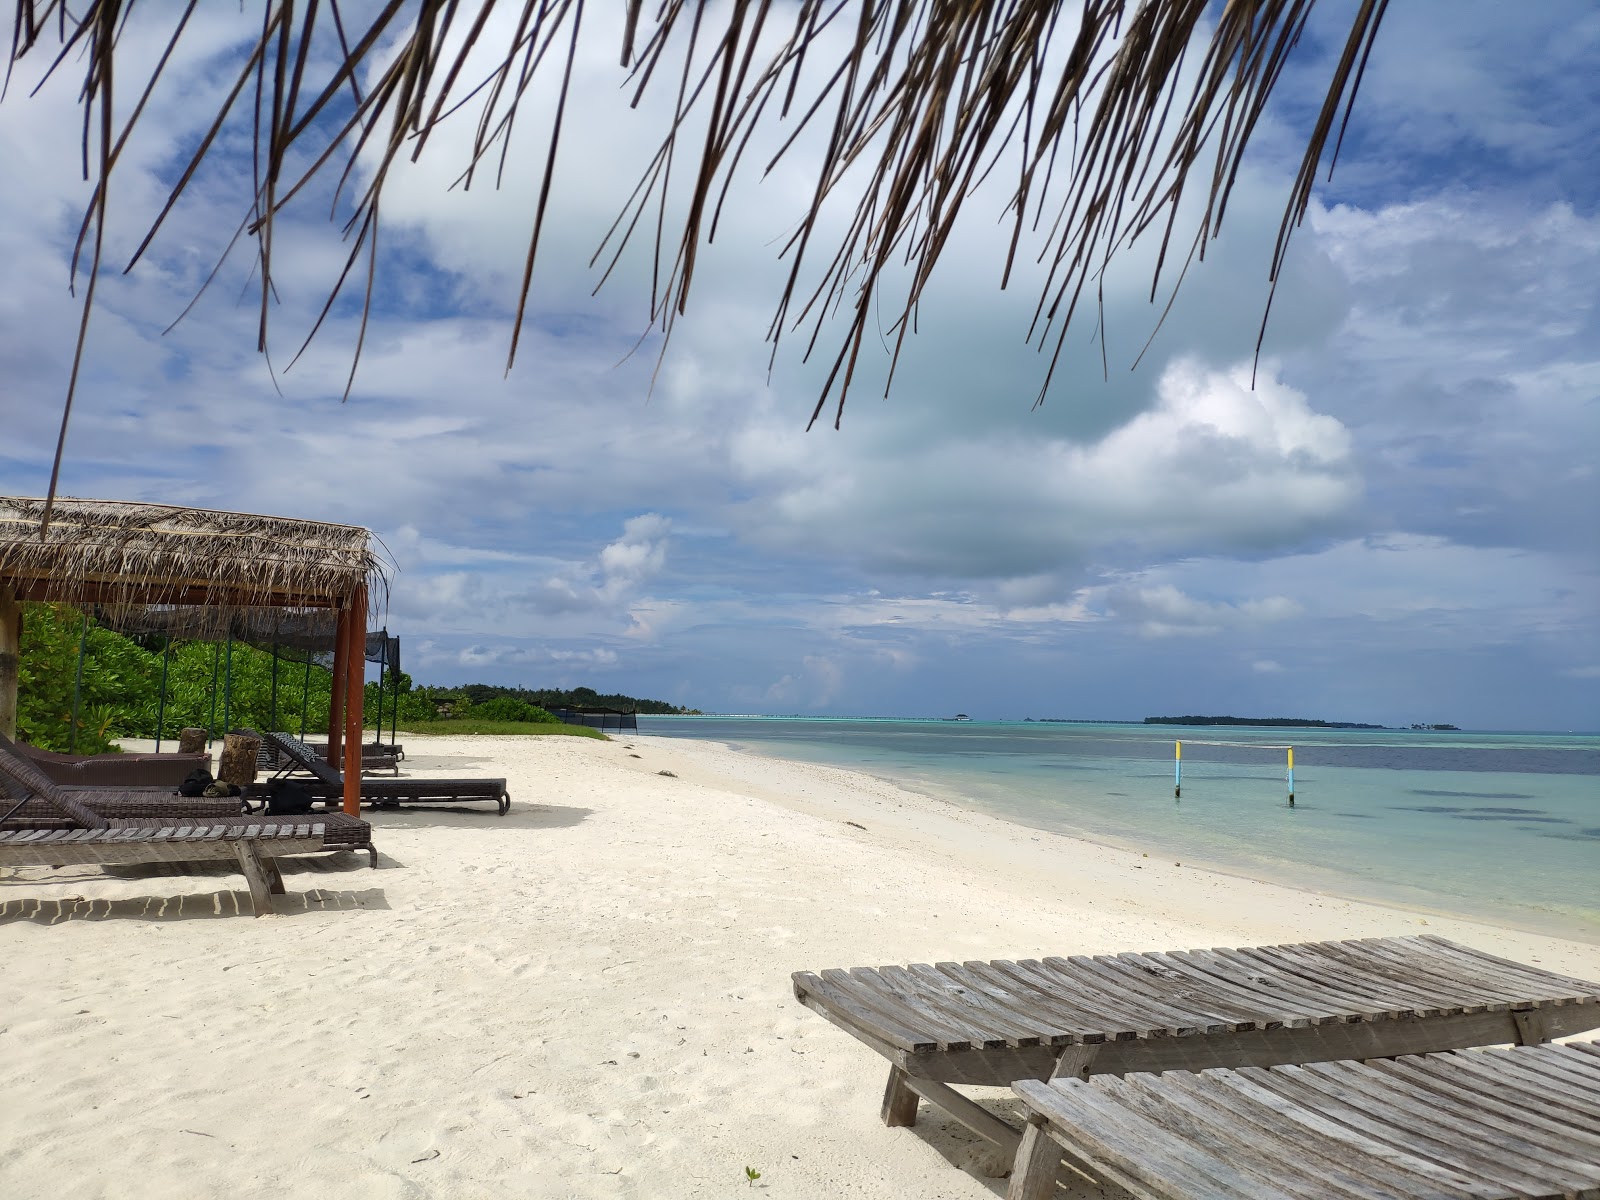 Photo de Guest Beach Maamigili - endroit populaire parmi les connaisseurs de la détente